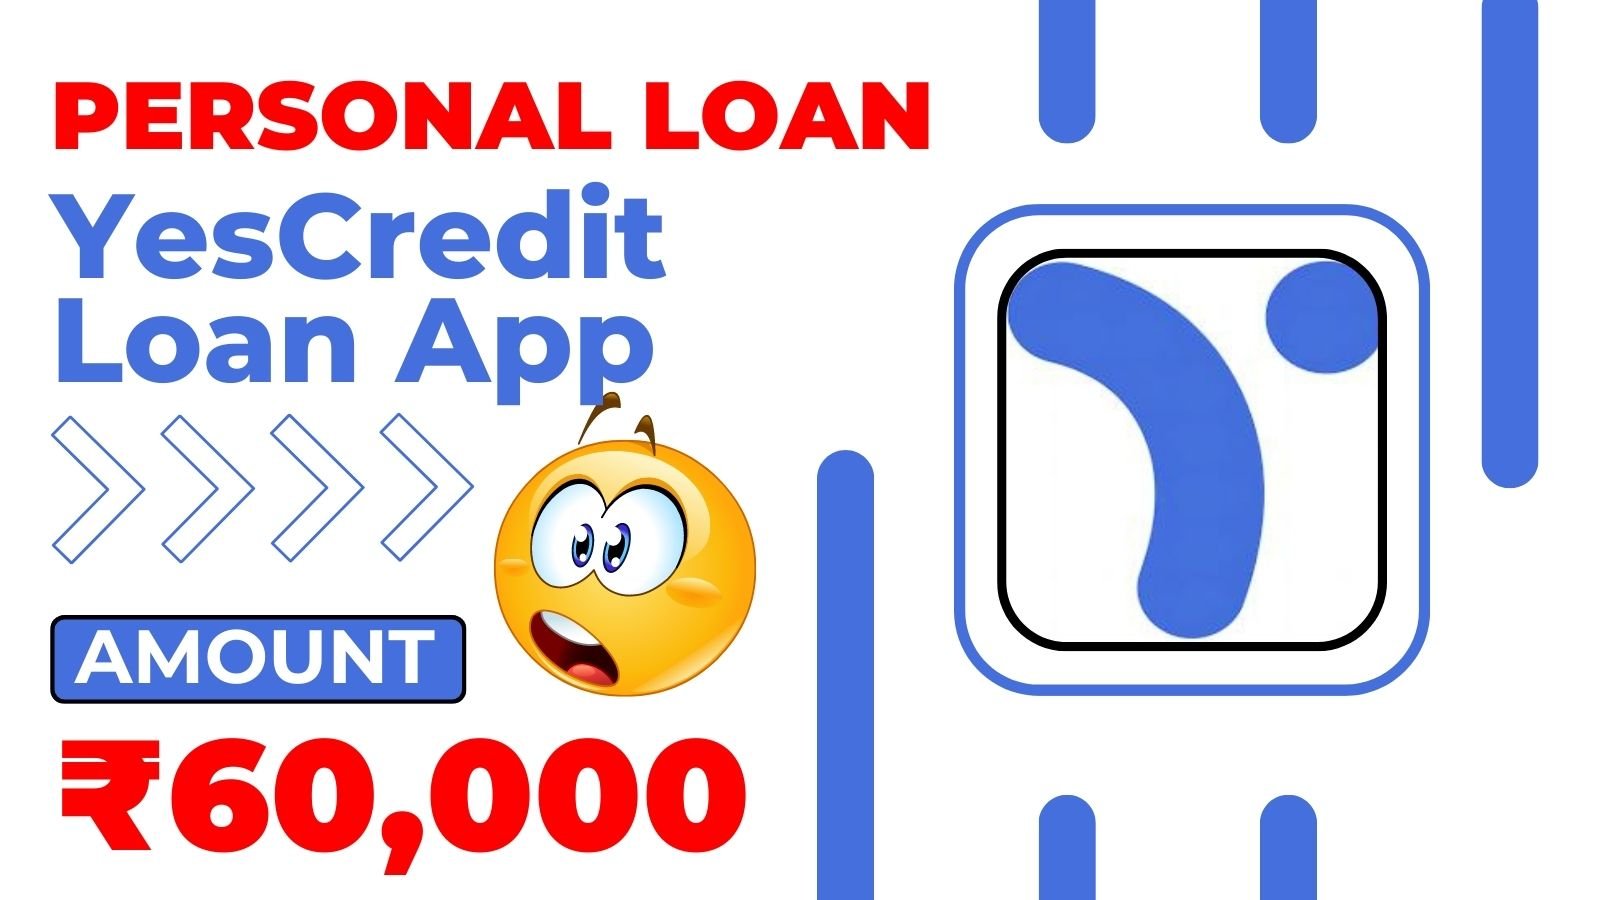 Yescredit Loan App Loan Amount